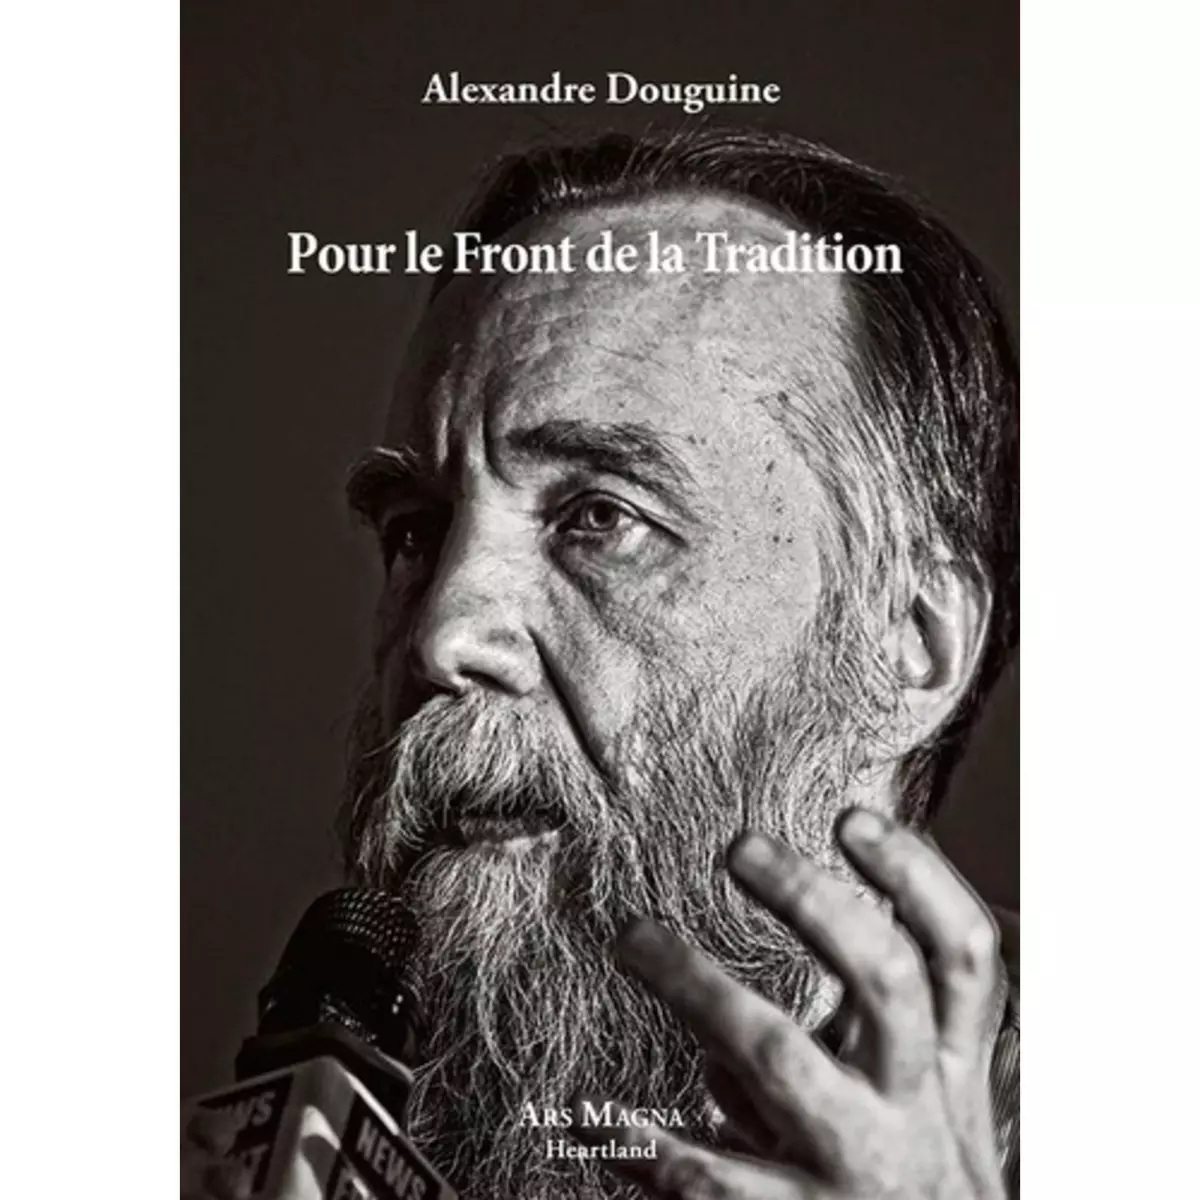  POUR LE FRONT DE LA TRADITION, Douguine Alexandre